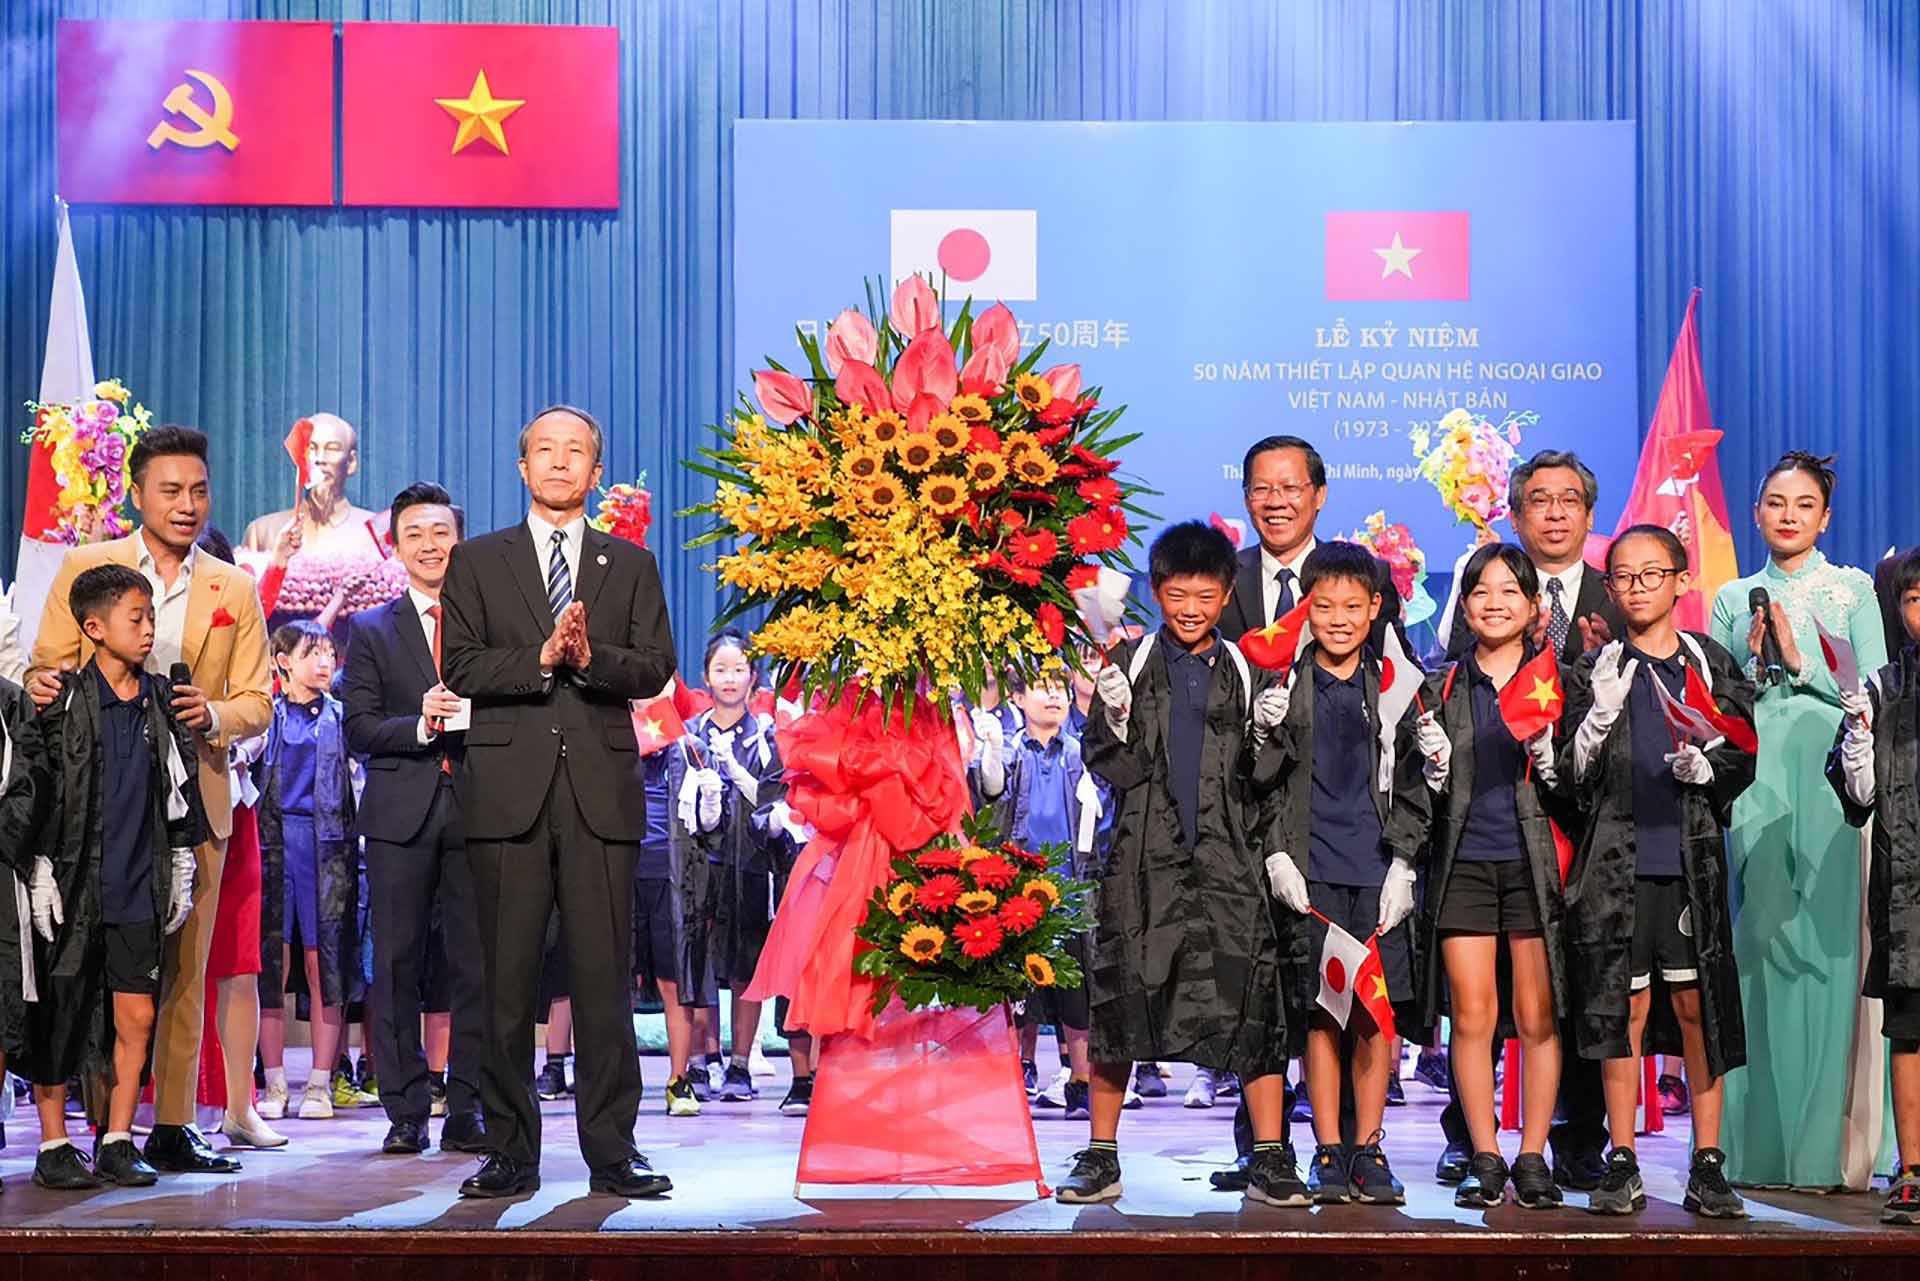 Lễ kỷ niệm 50 năm thiết lập quan hệ ngoại giao Việt Nam – Nhật Bản tại TP. Hồ Chí Minh. (Nguồn: Sở Ngoại vụ TP. Hồ Chí Minh)